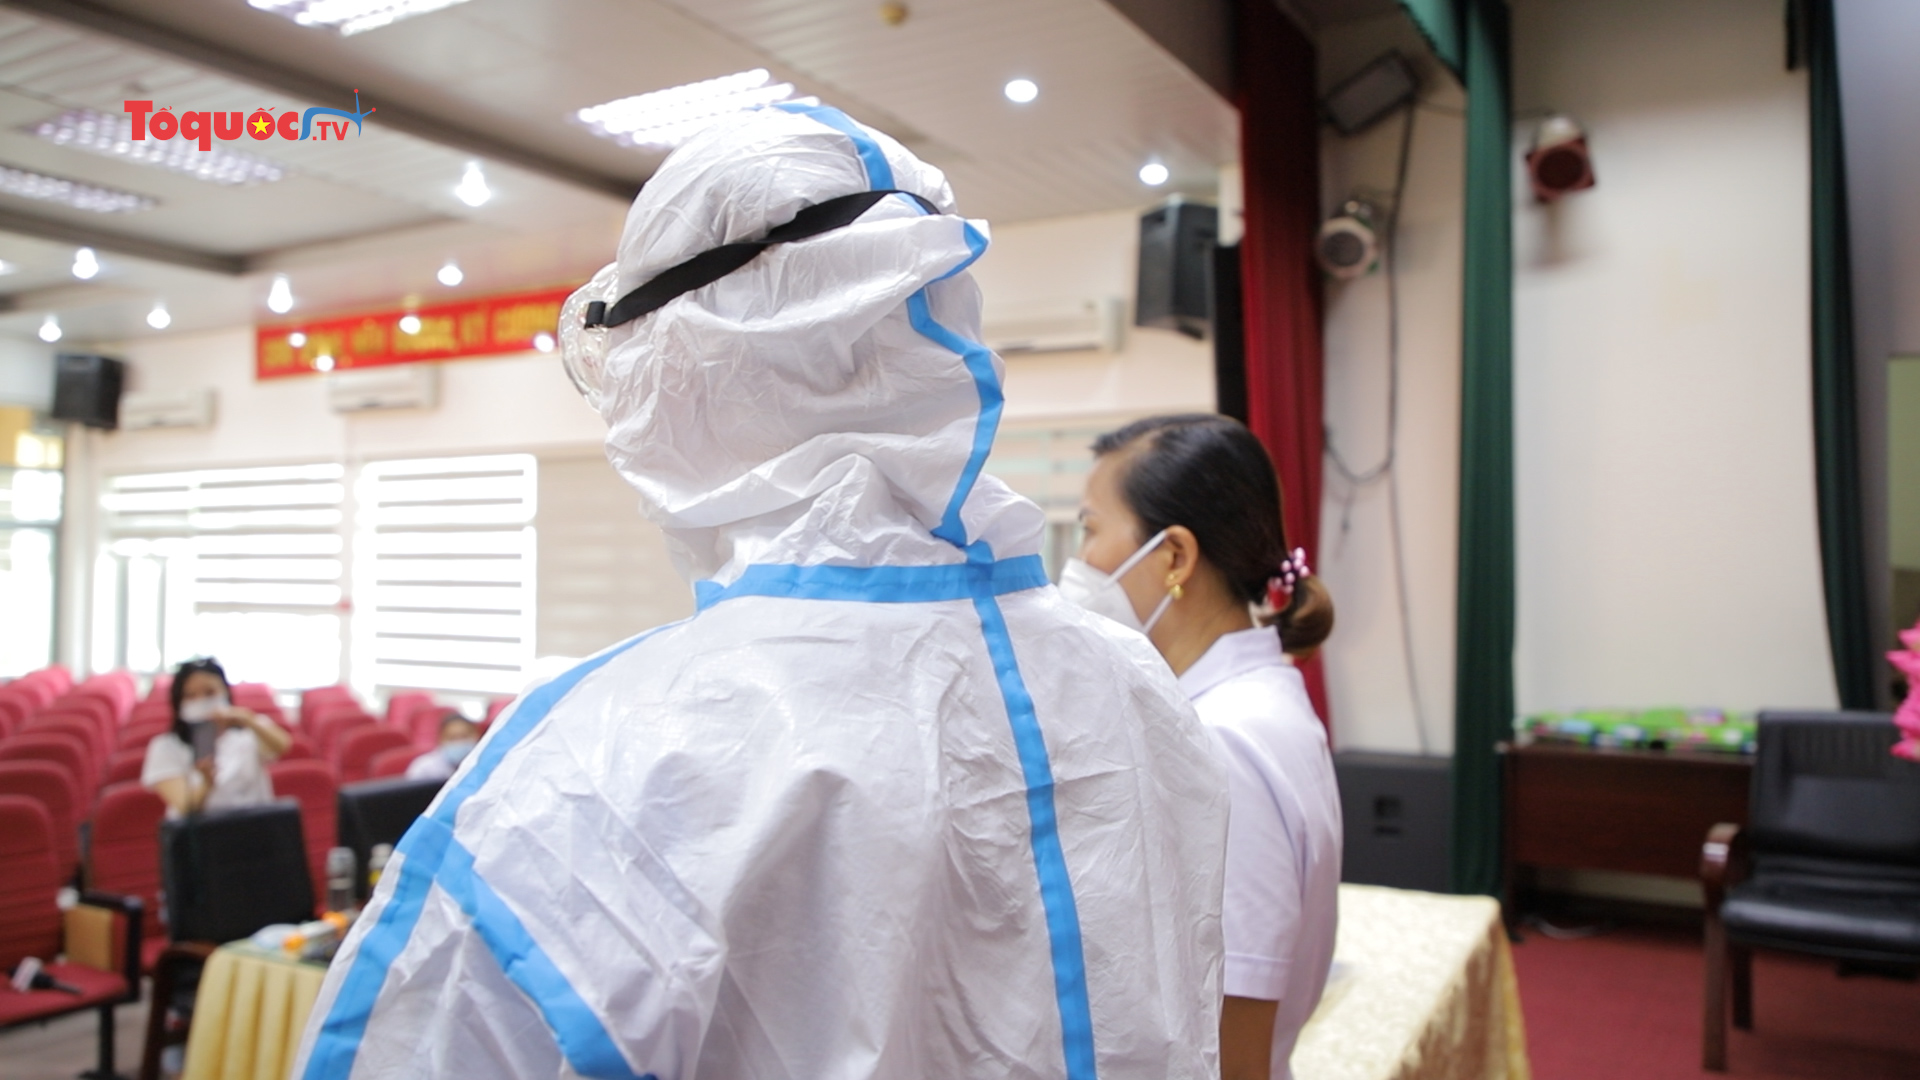 Hơn 60 chiếc áo chống sốc nhiệt đã đến tay các bác sĩ Bệnh viện dã chiến Bắc Giang